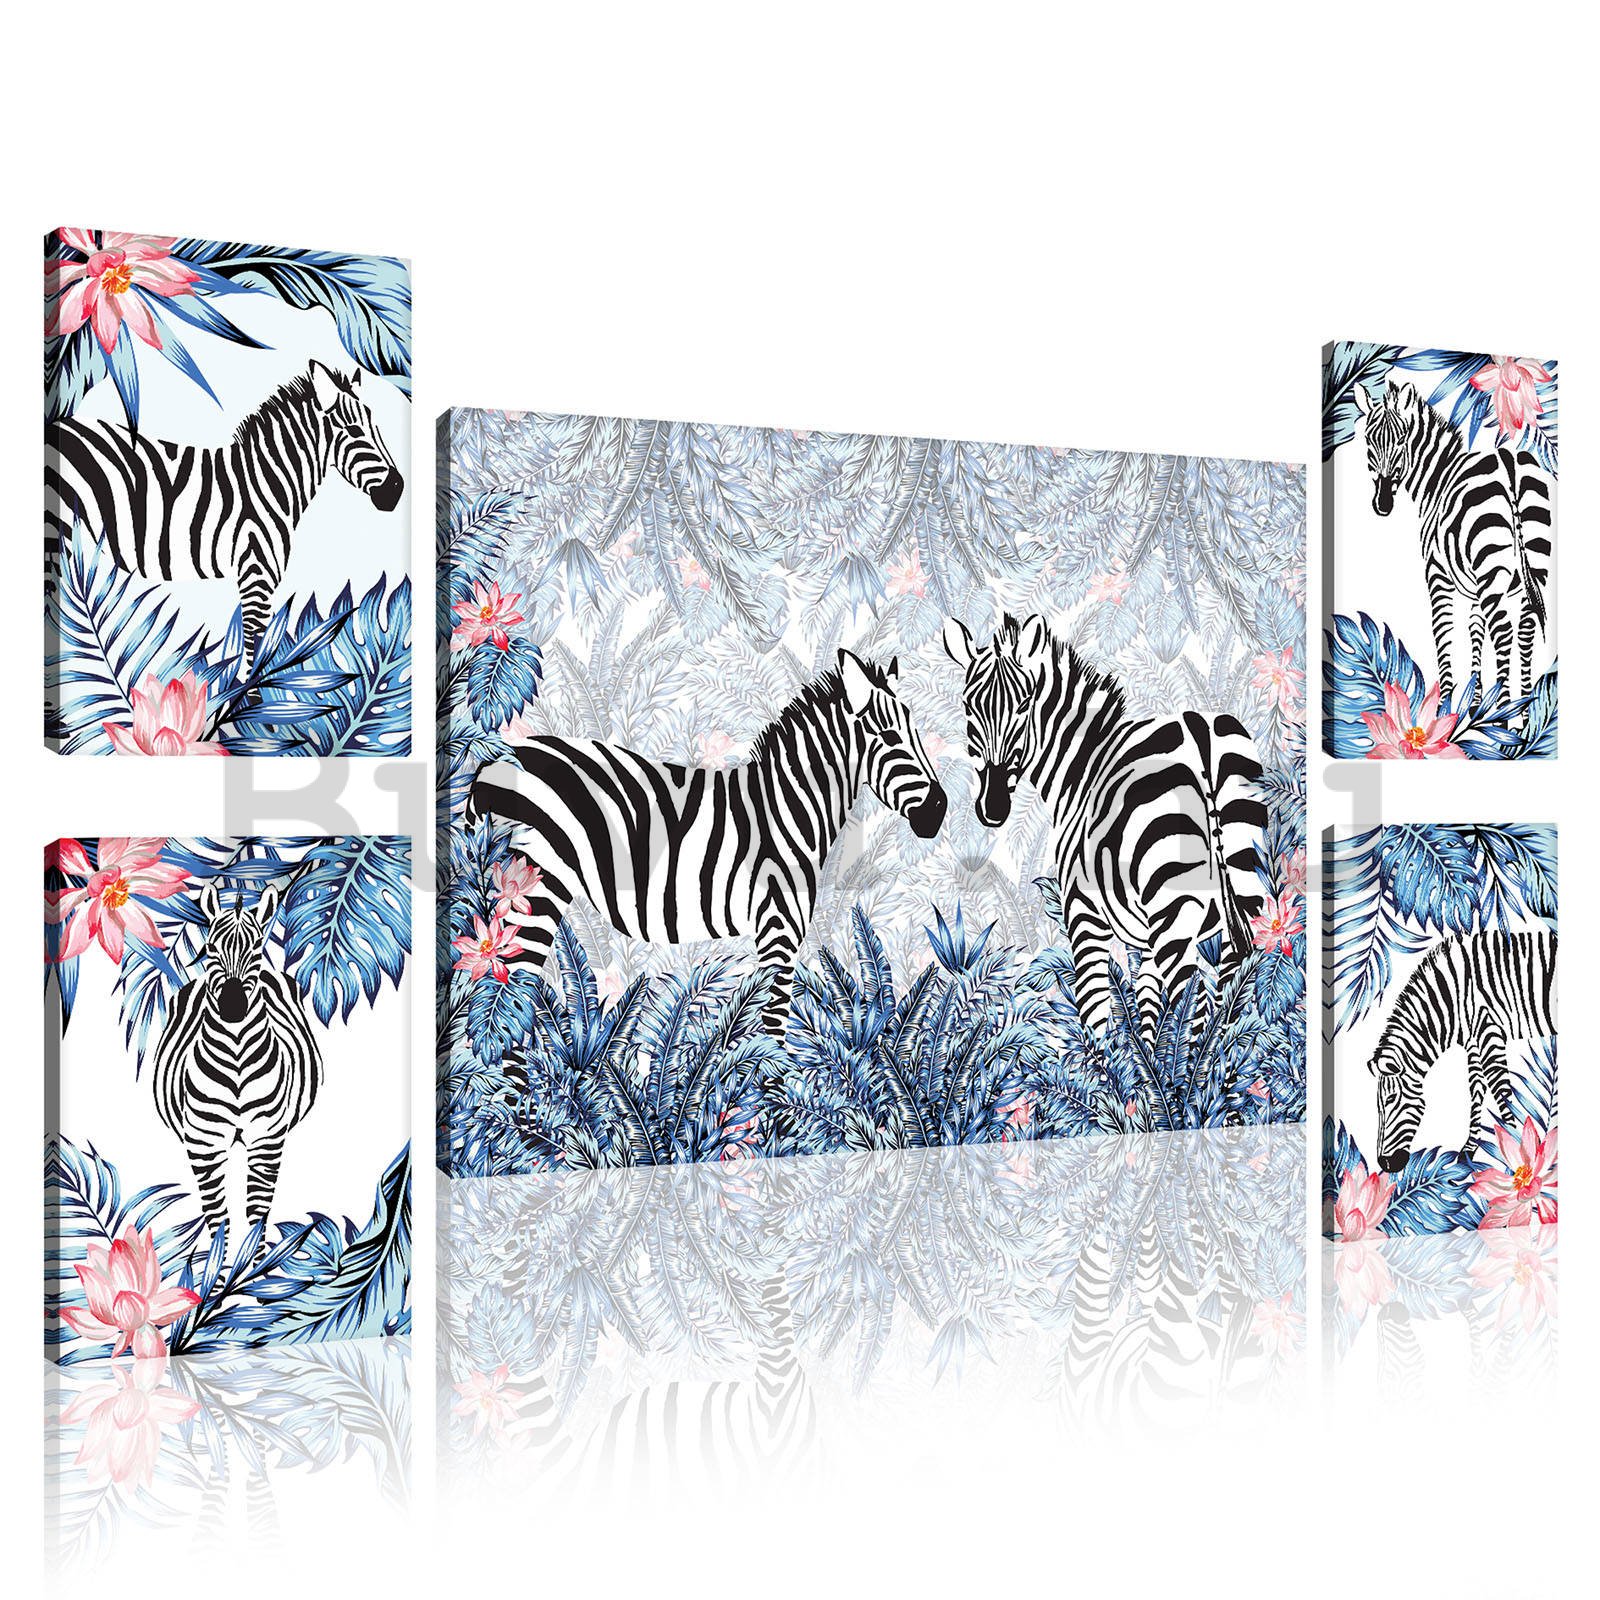 Vászonkép: Festett zebrák (1) - készlet 1 db 70x50 cm és 4 db 32,4x22,8 cm